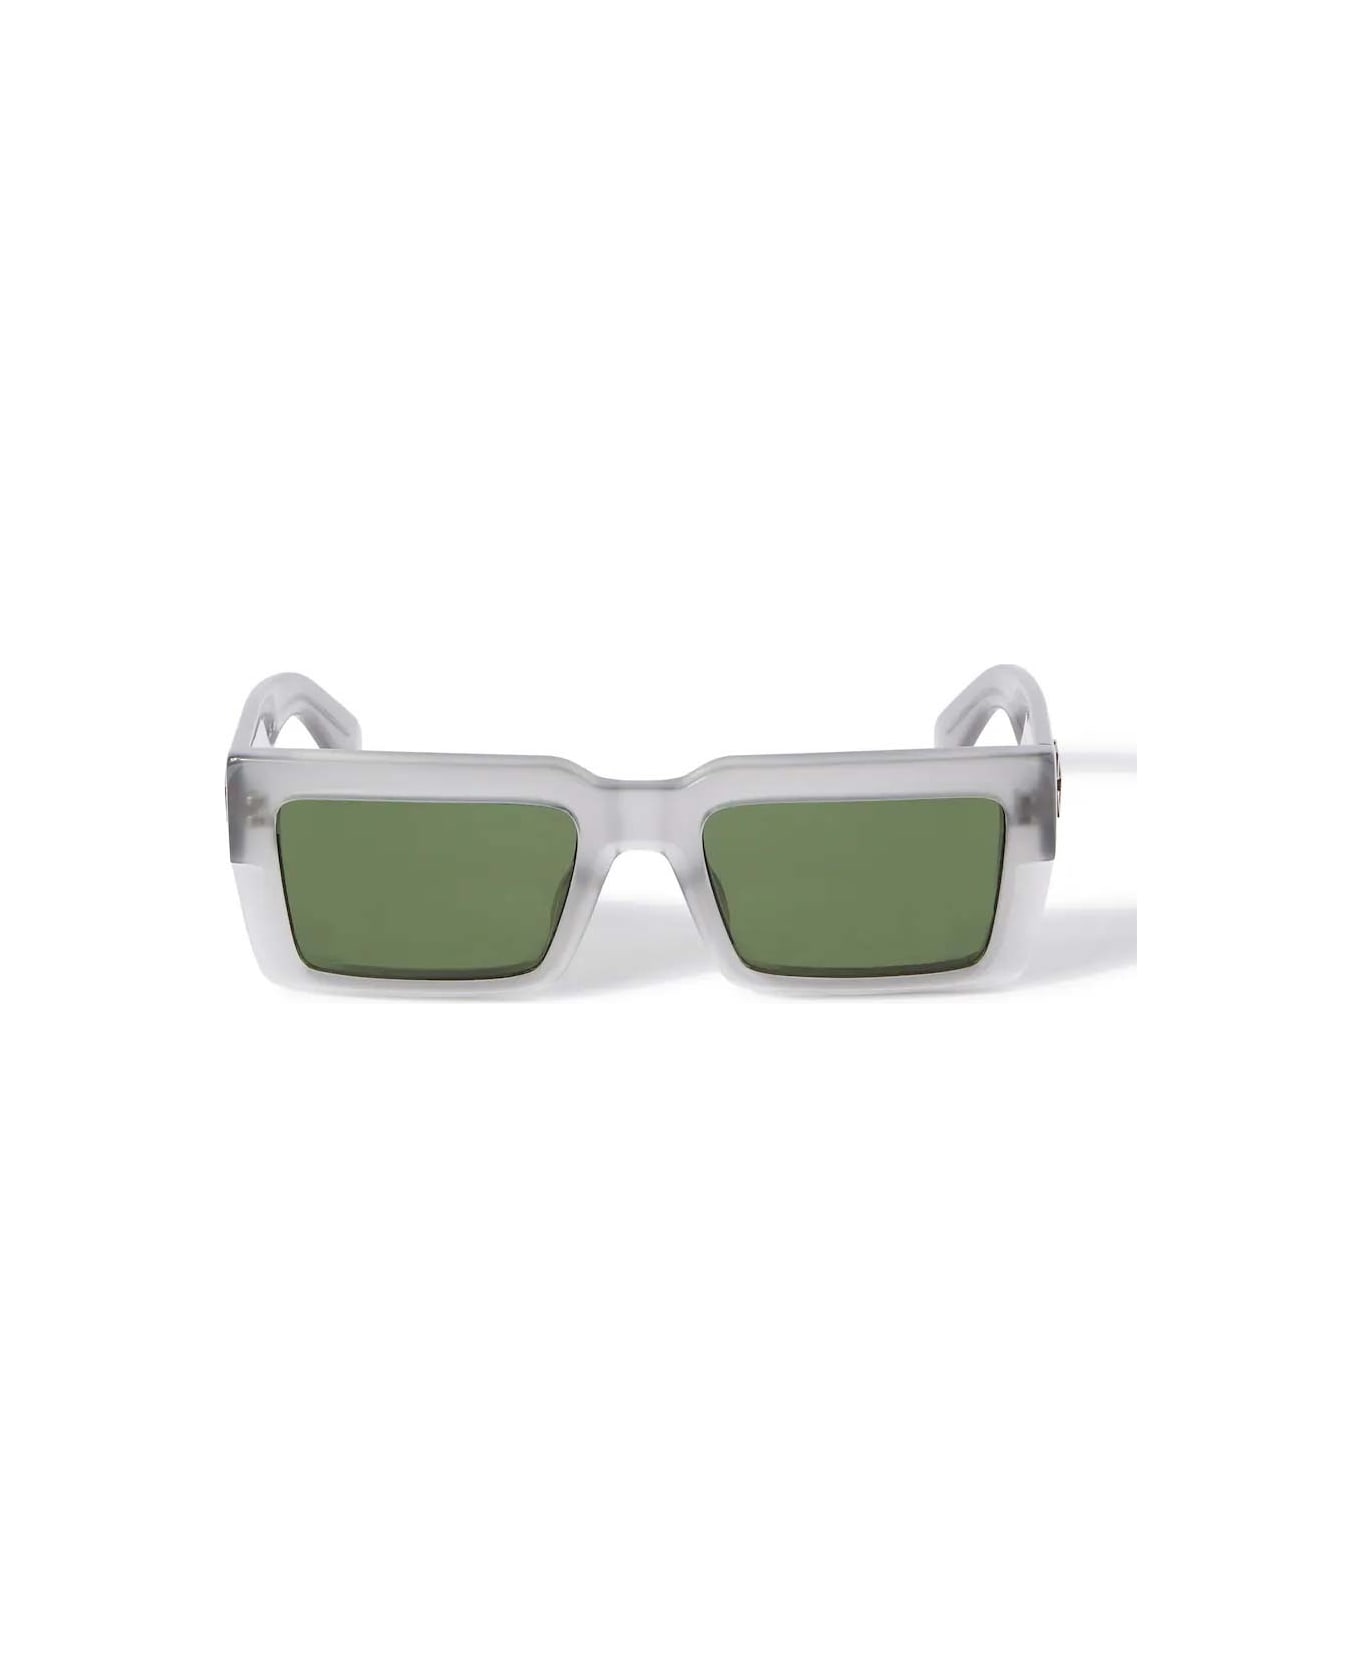 Off-White Sunglasses - Grigio/Verde